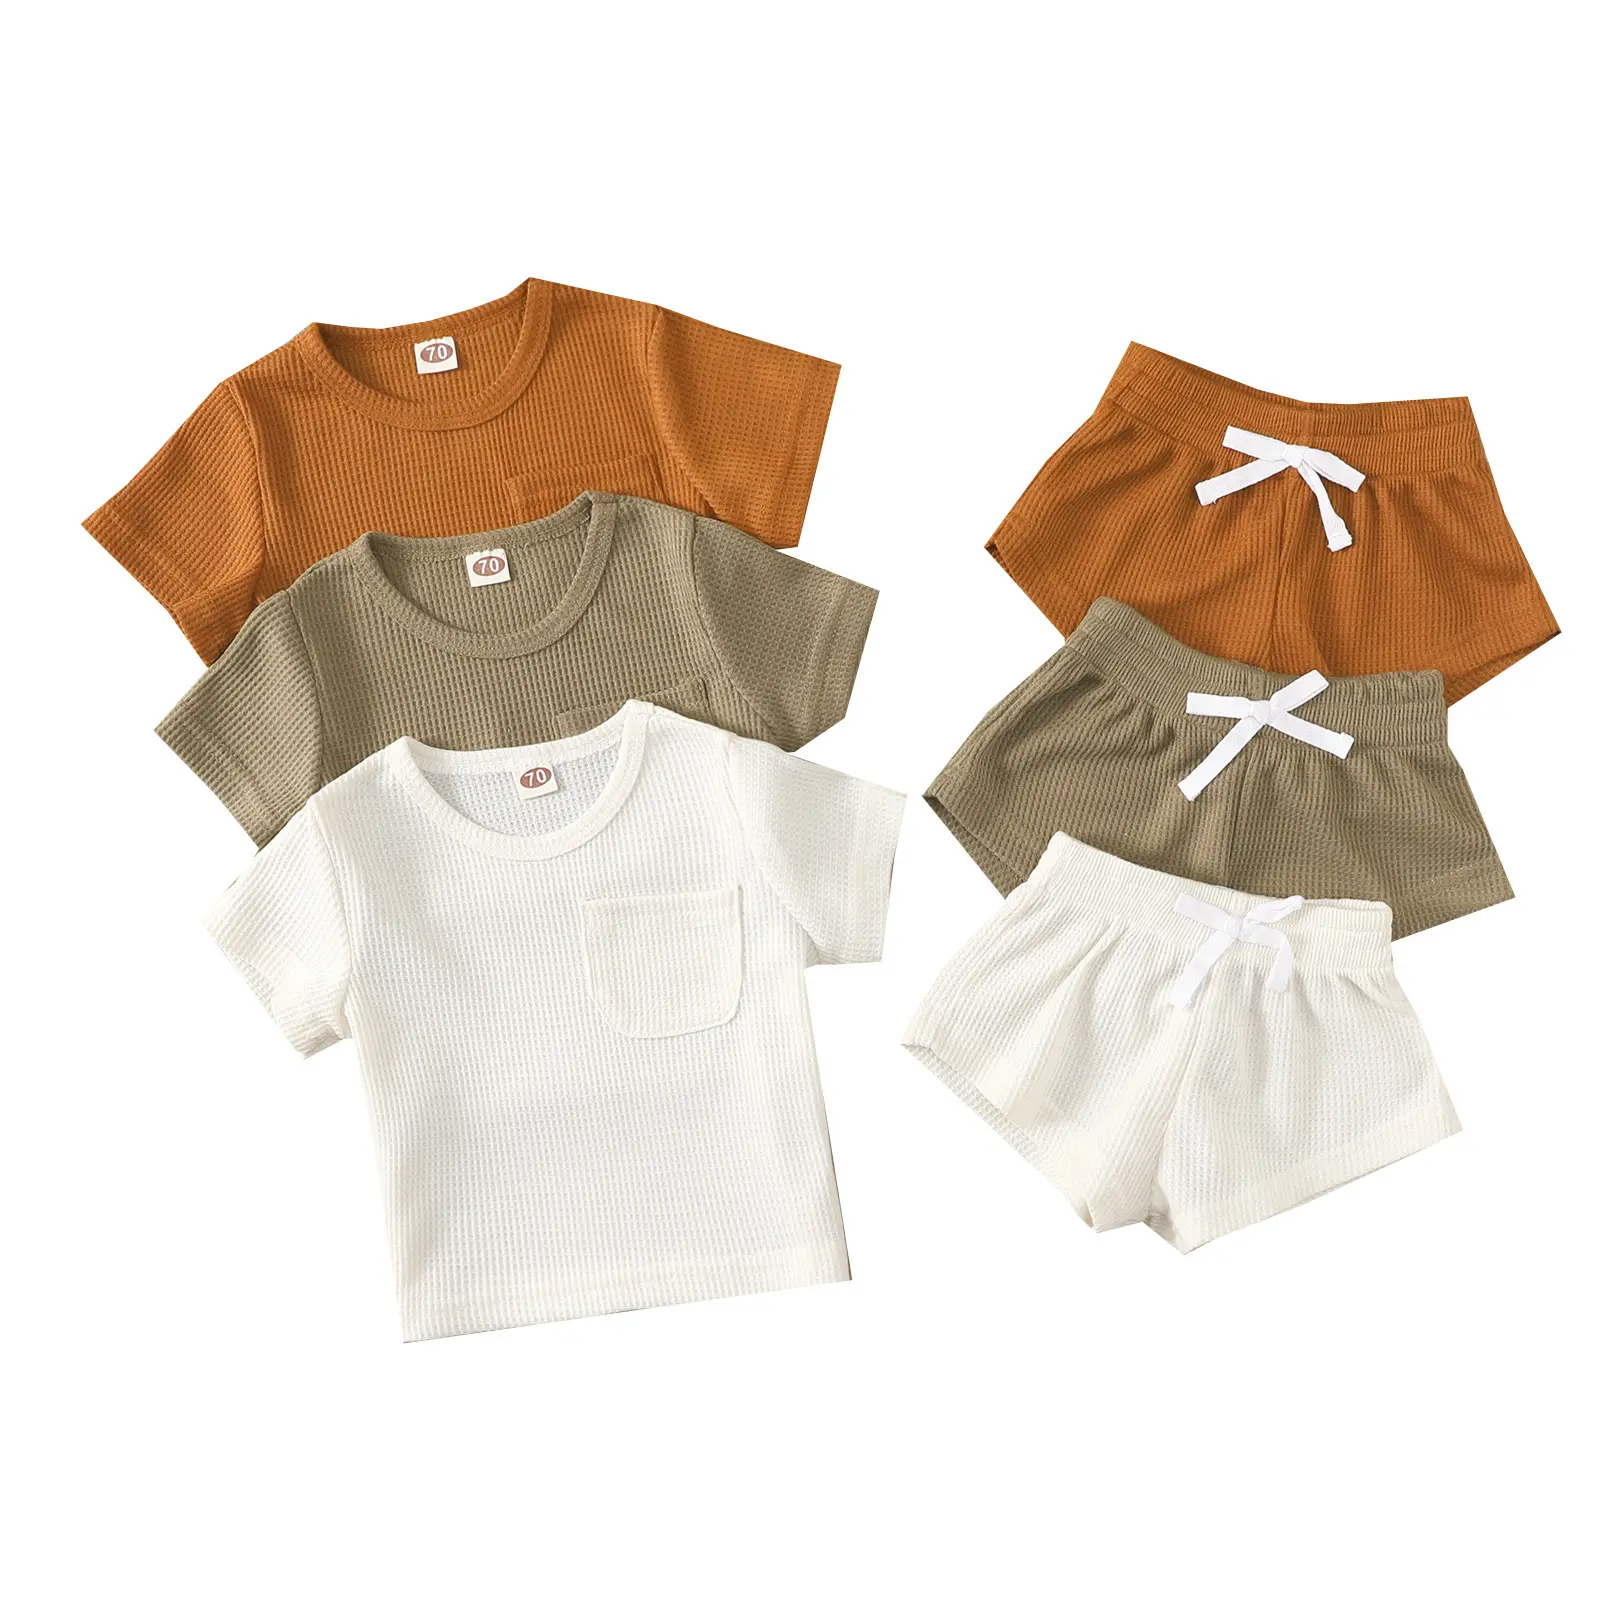 CUSTOM INS Baby Clothing Sets Summer Short Sleeve Waffle Infant Suits Unisex Shirts Straps 2pcs Kids Girls Sets